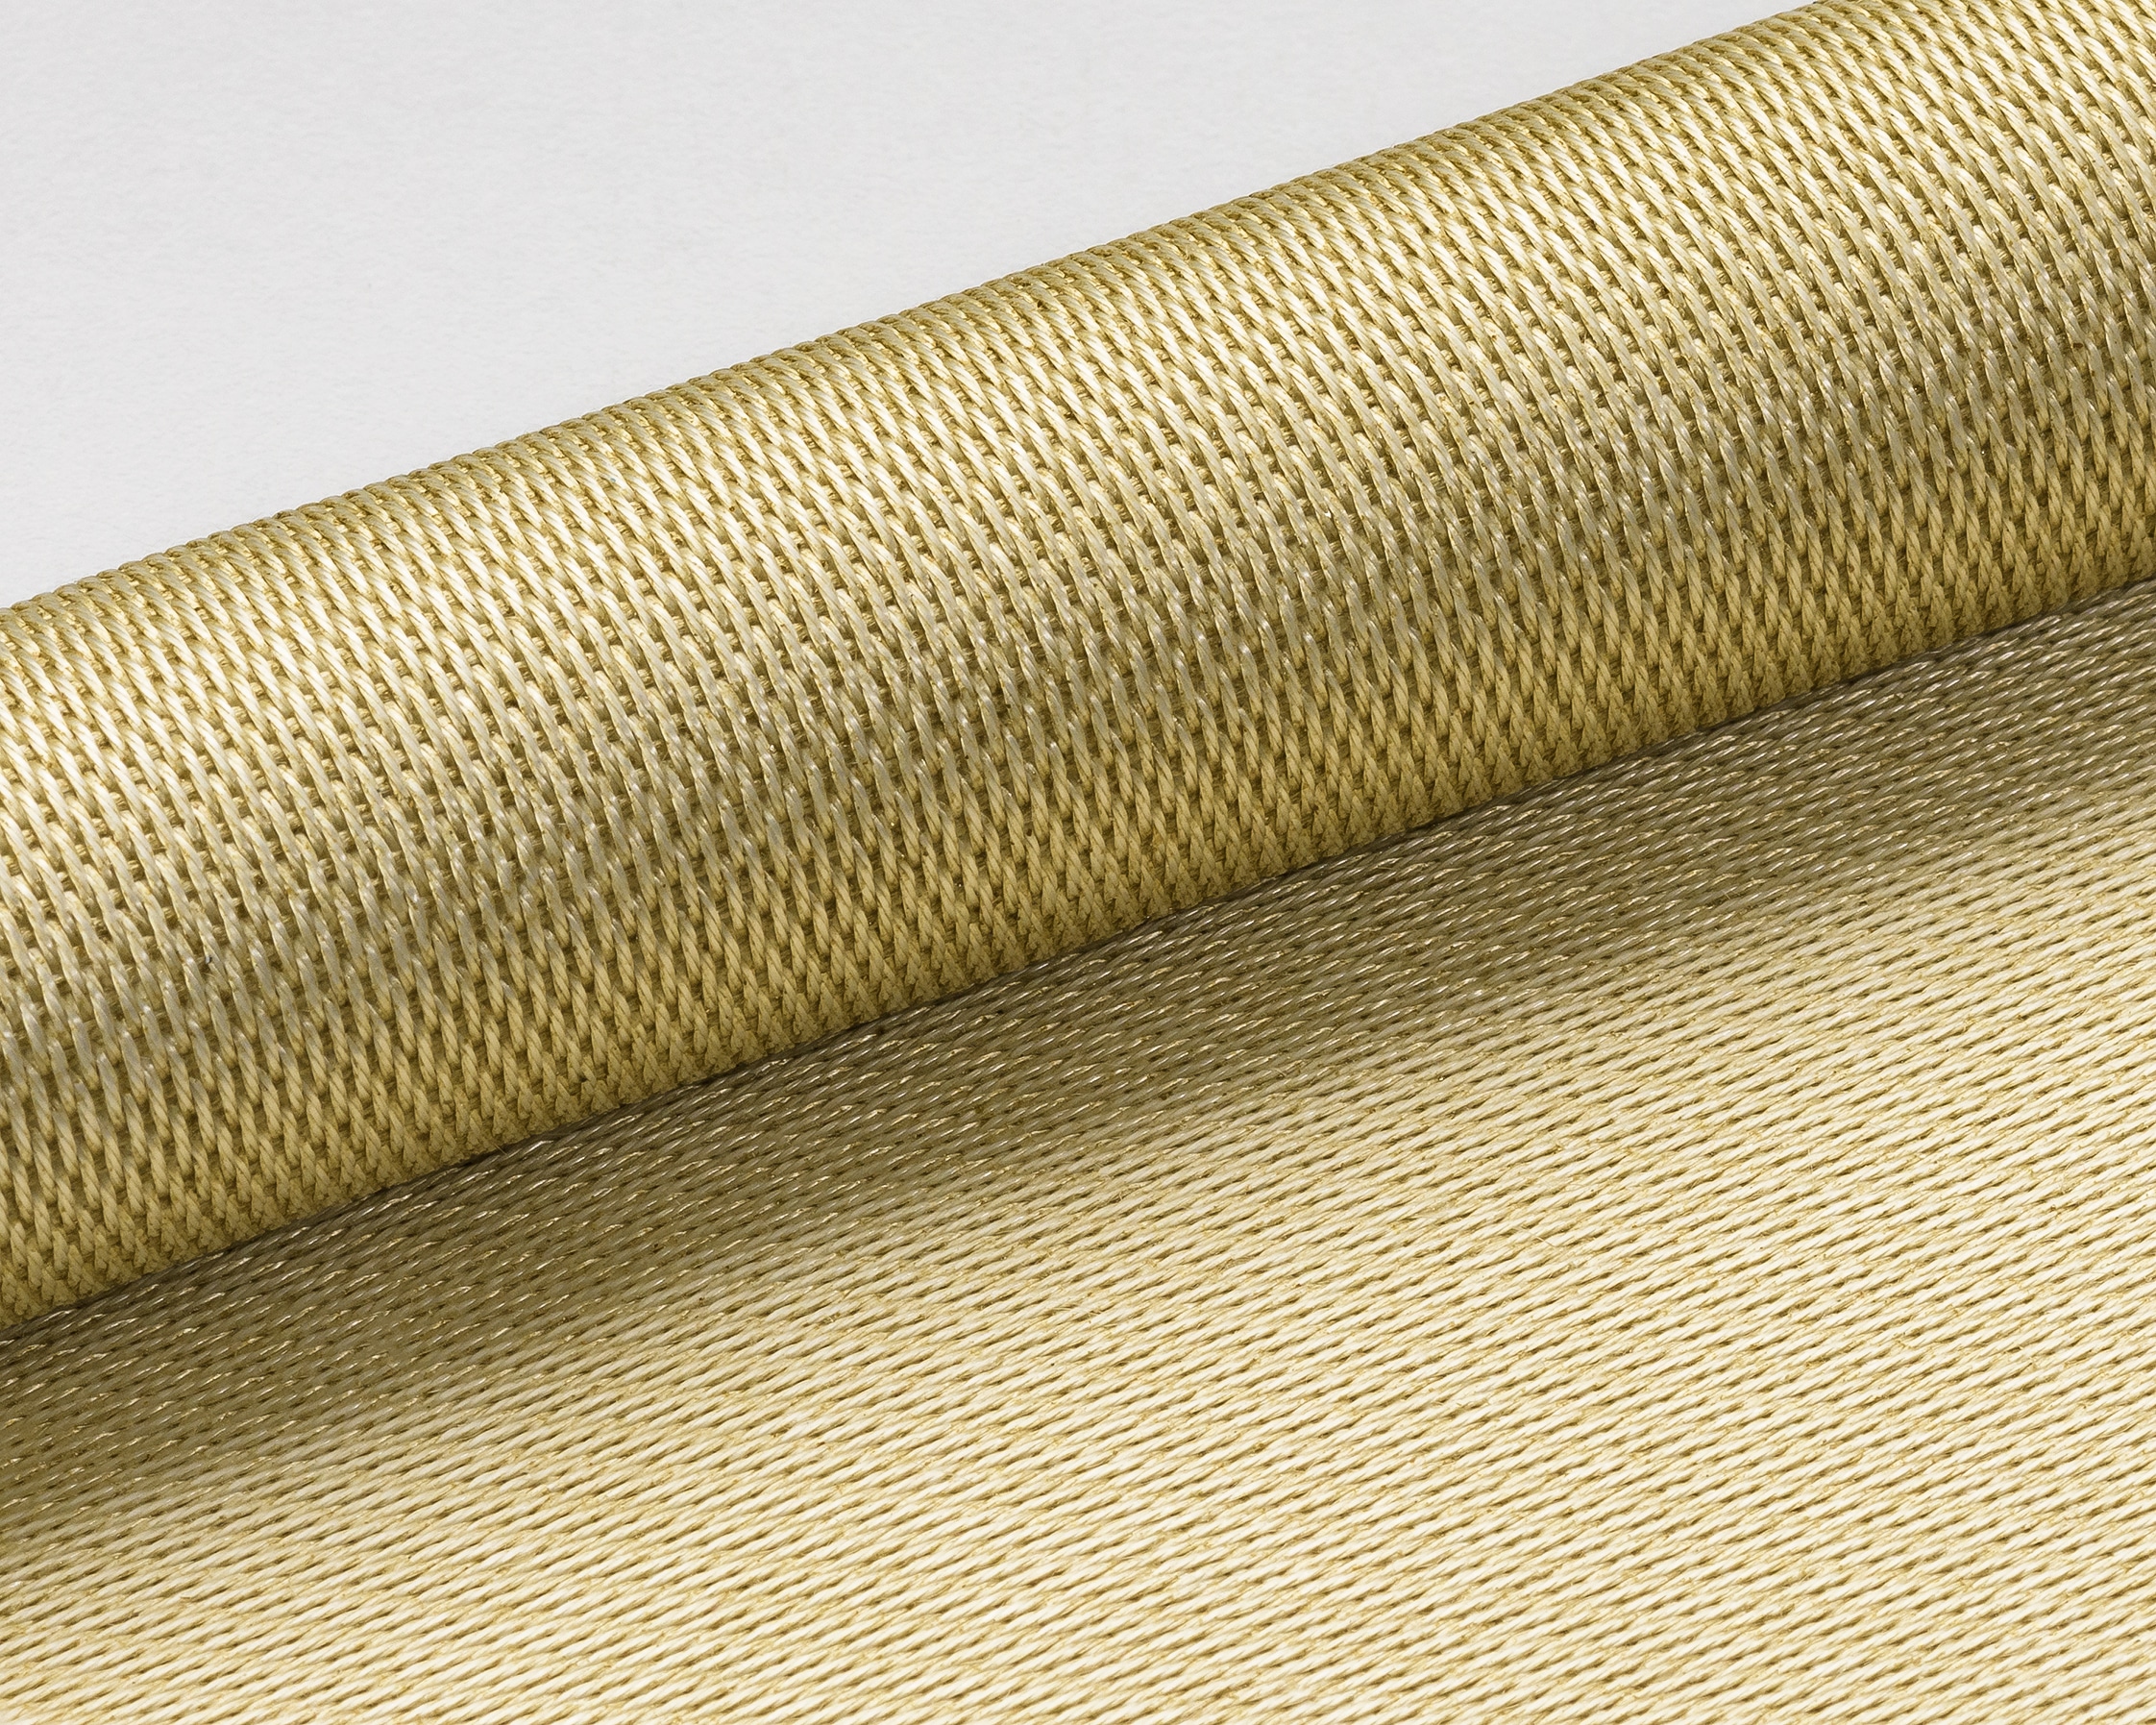 Les textiles isolants haute température fabriqués par Apronor